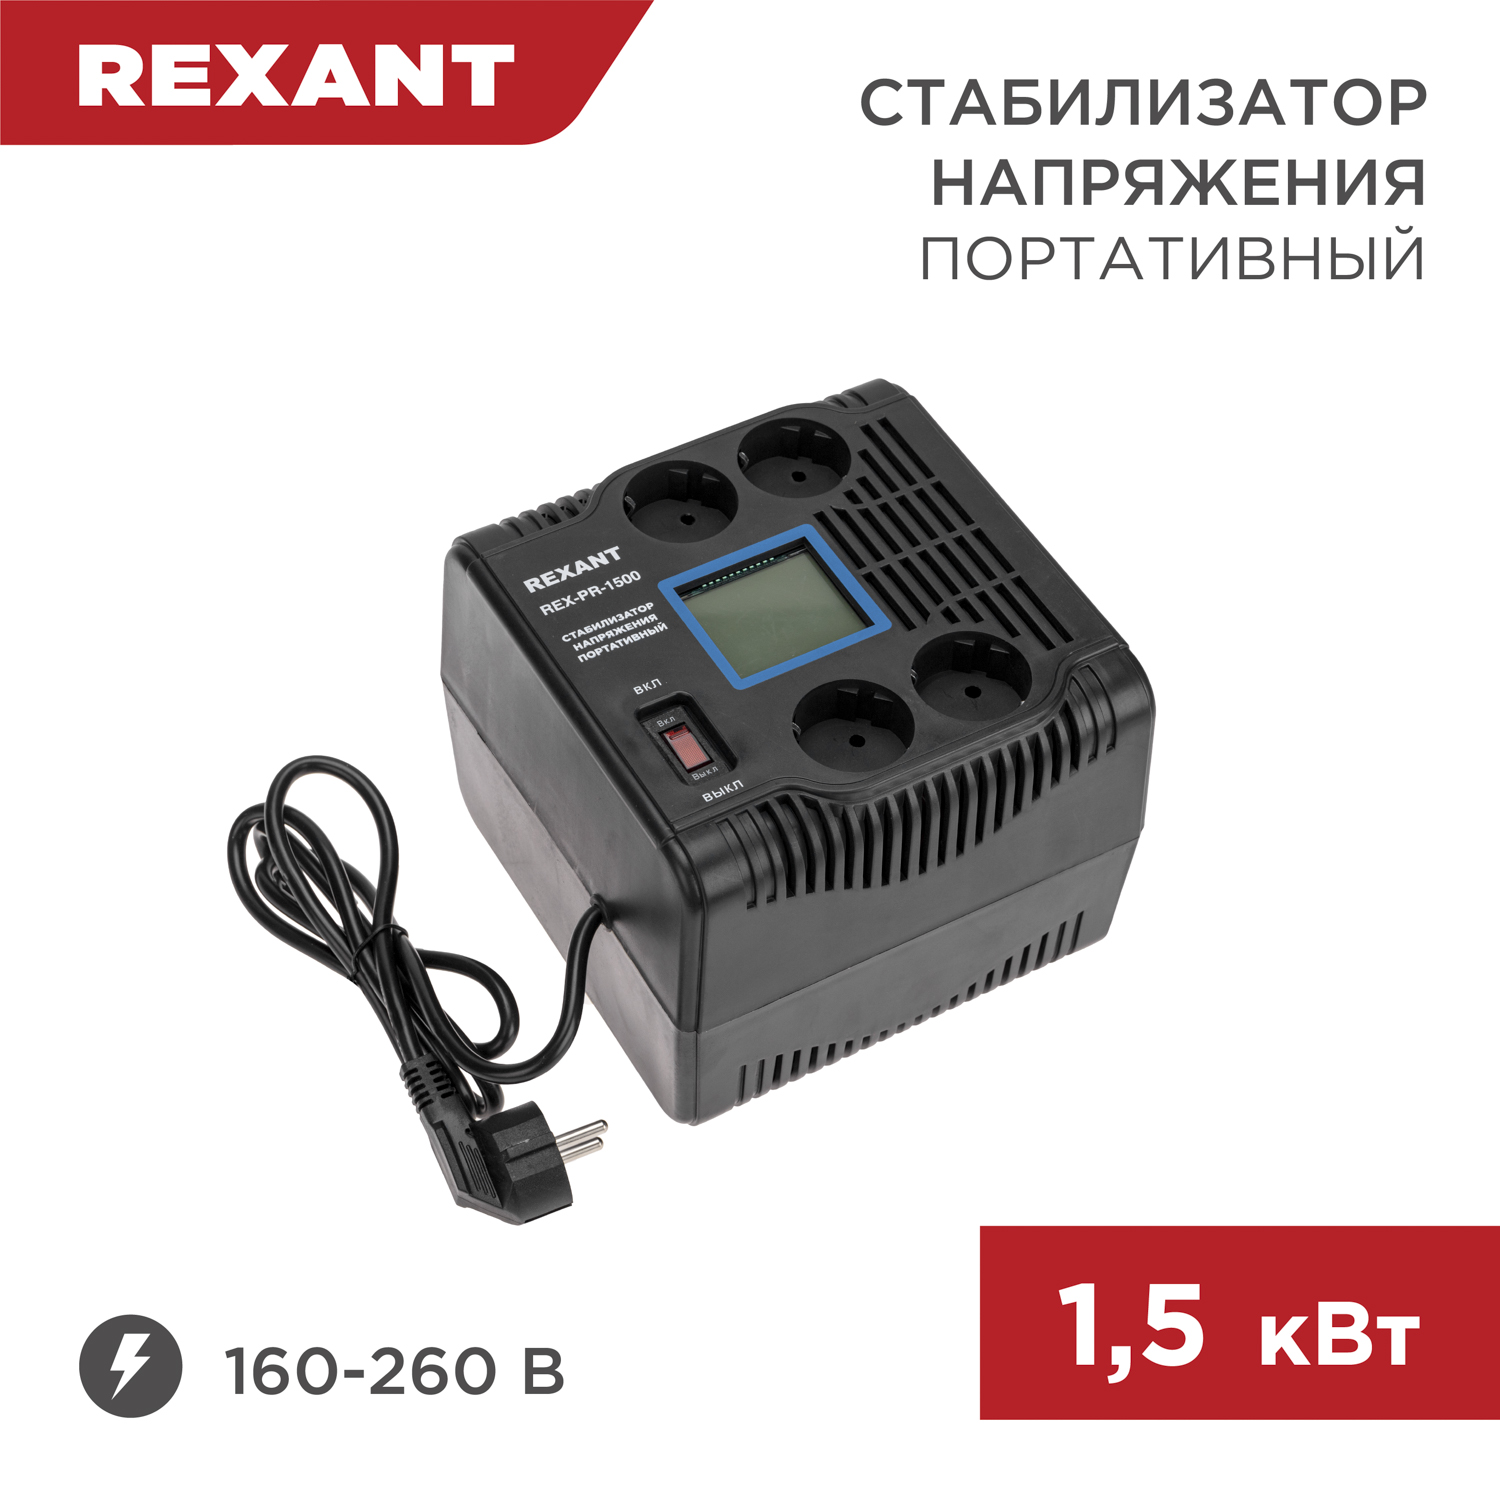 Стабилизатор напряжения портативный REXANT REX-PR-1500 11-5031 стабилизатор напряжения портативный rexant rex pr 1000 11 5029